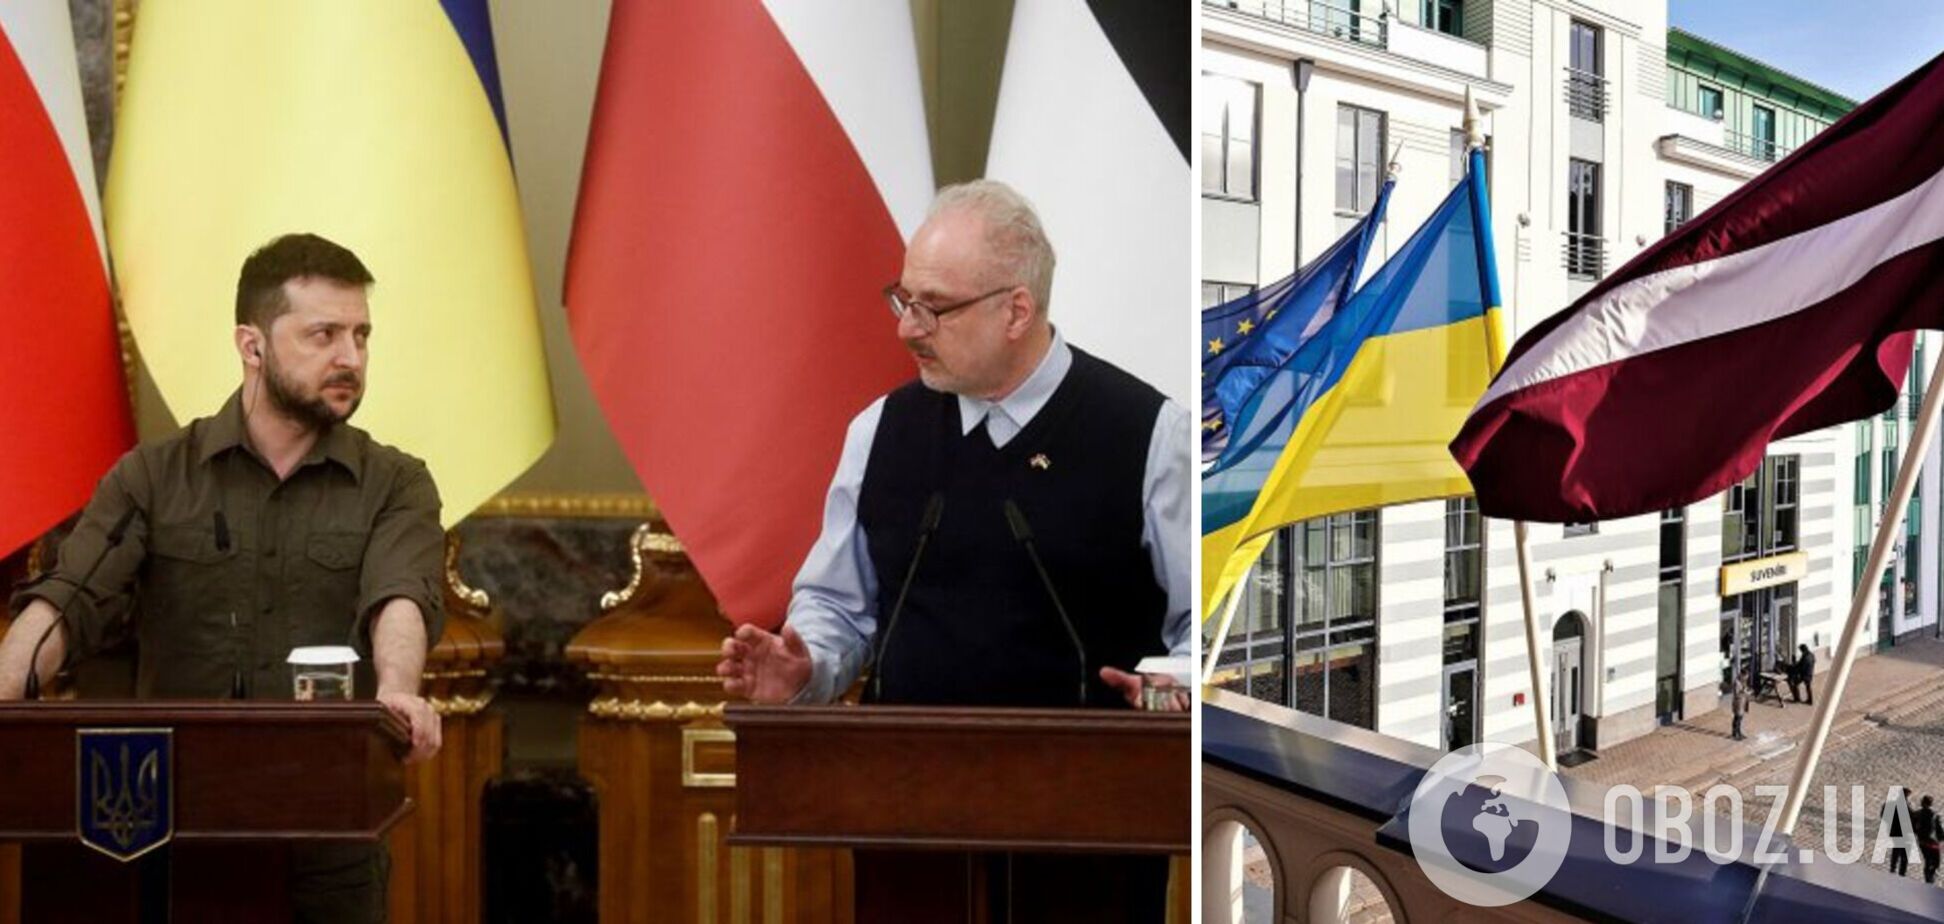 Зеленский с президентом Латвии почтили память павших воинов Украины и подписали важный документ. Все подробности